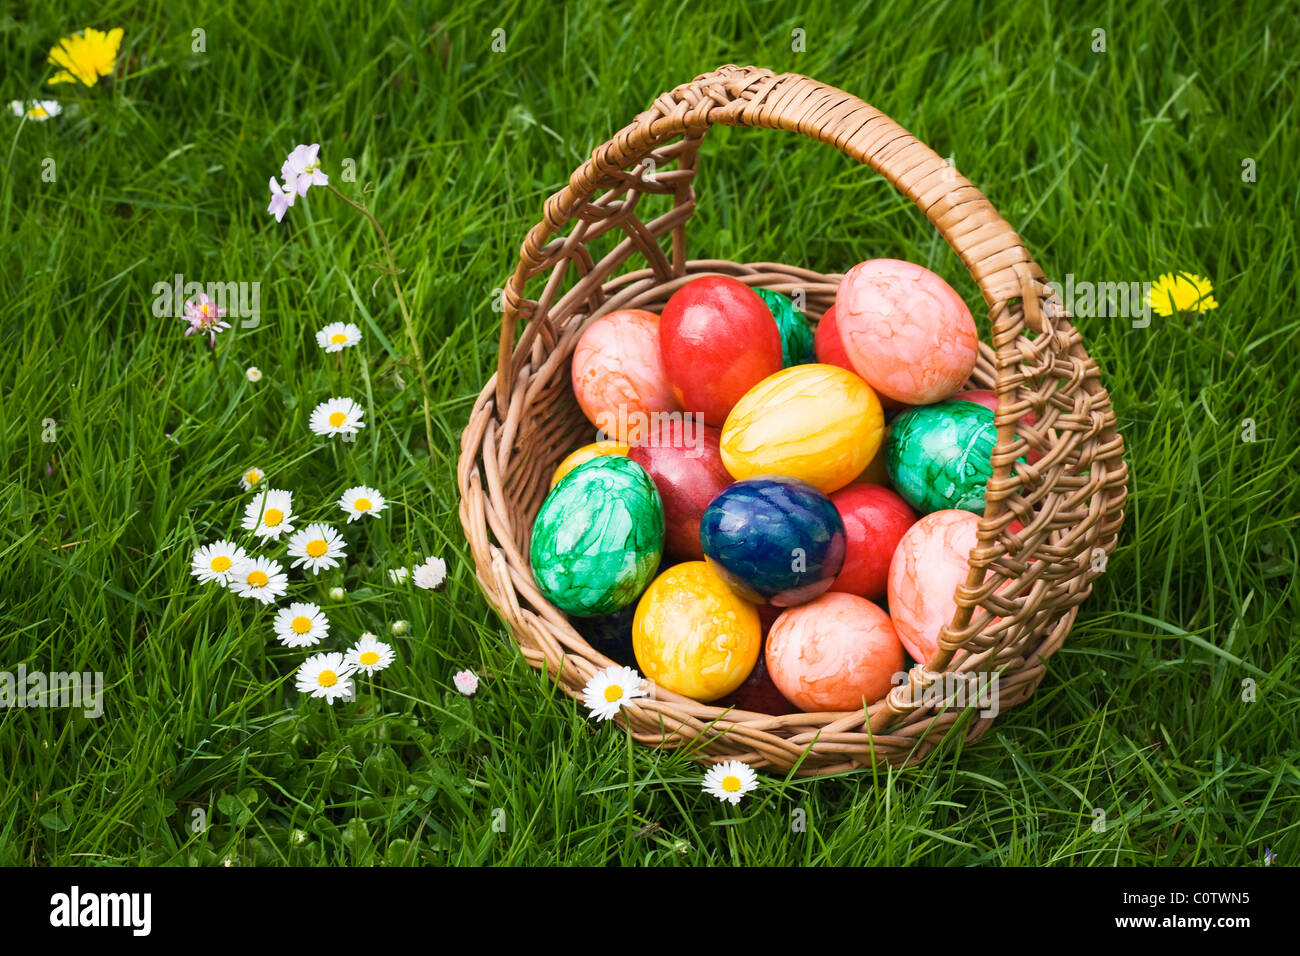 Basket full of Easter eggs in grass Stock Photo